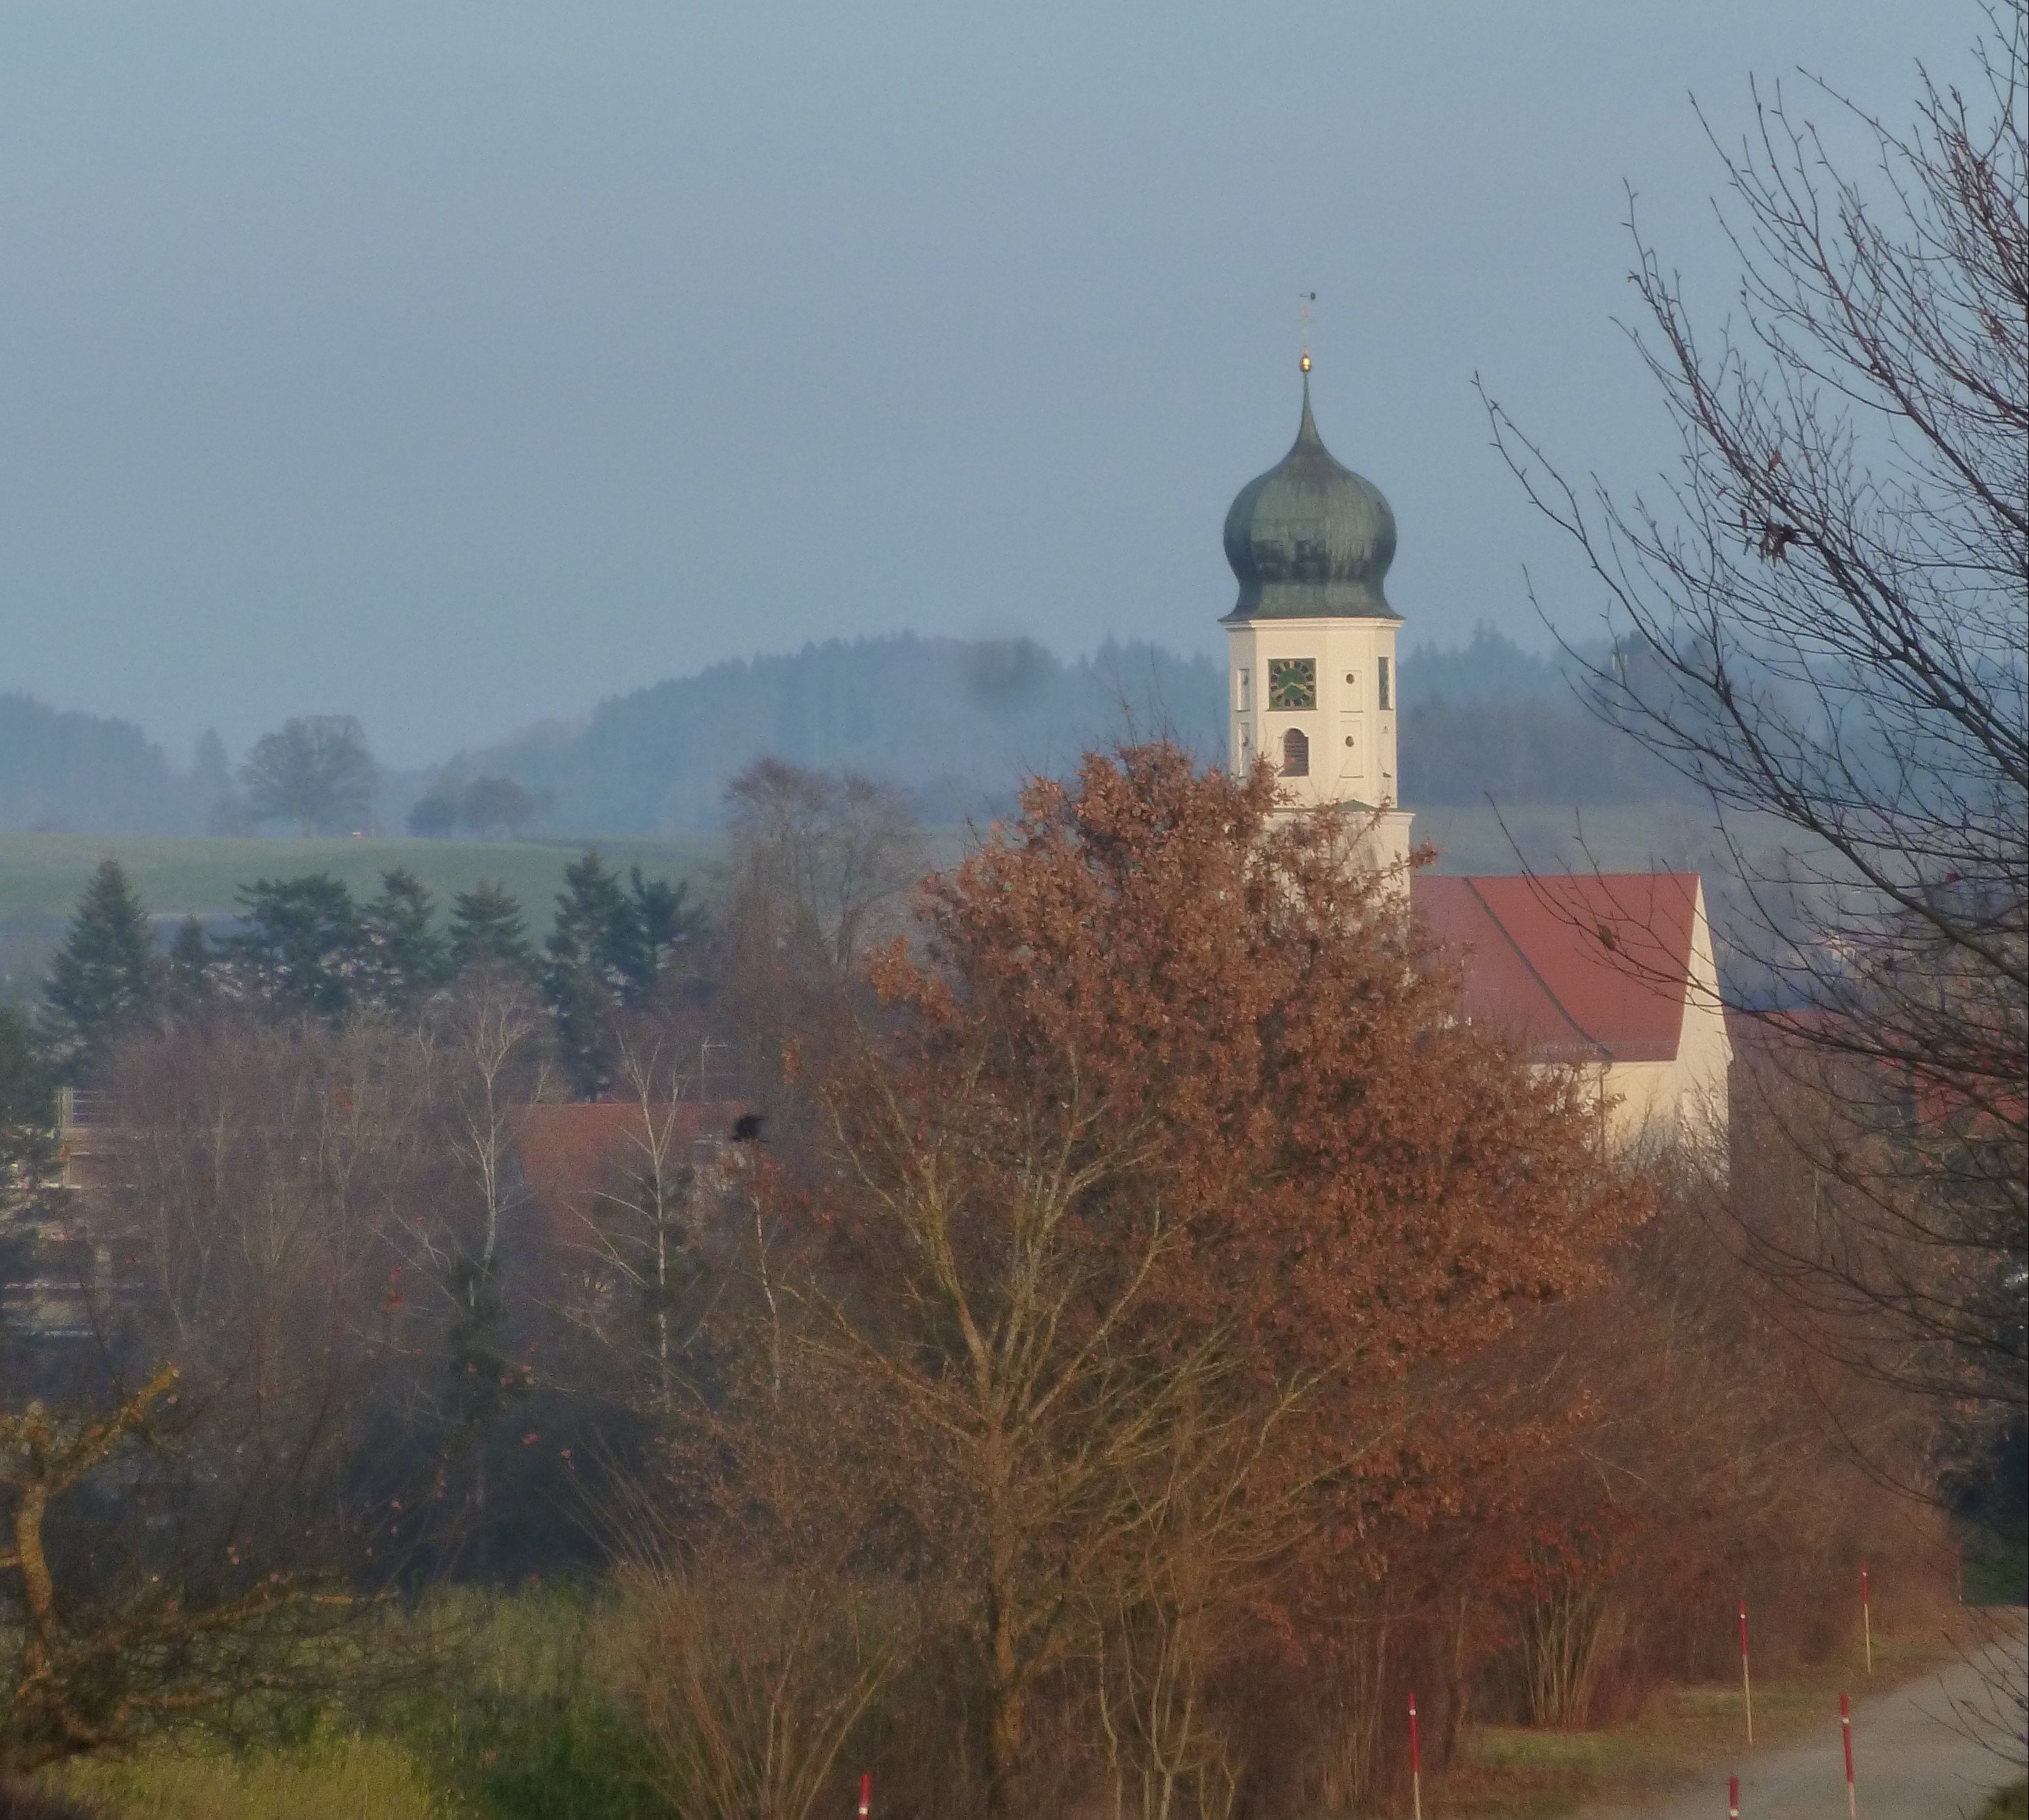  Markanter Zwiebelturm in herbstlicher Landschaft 